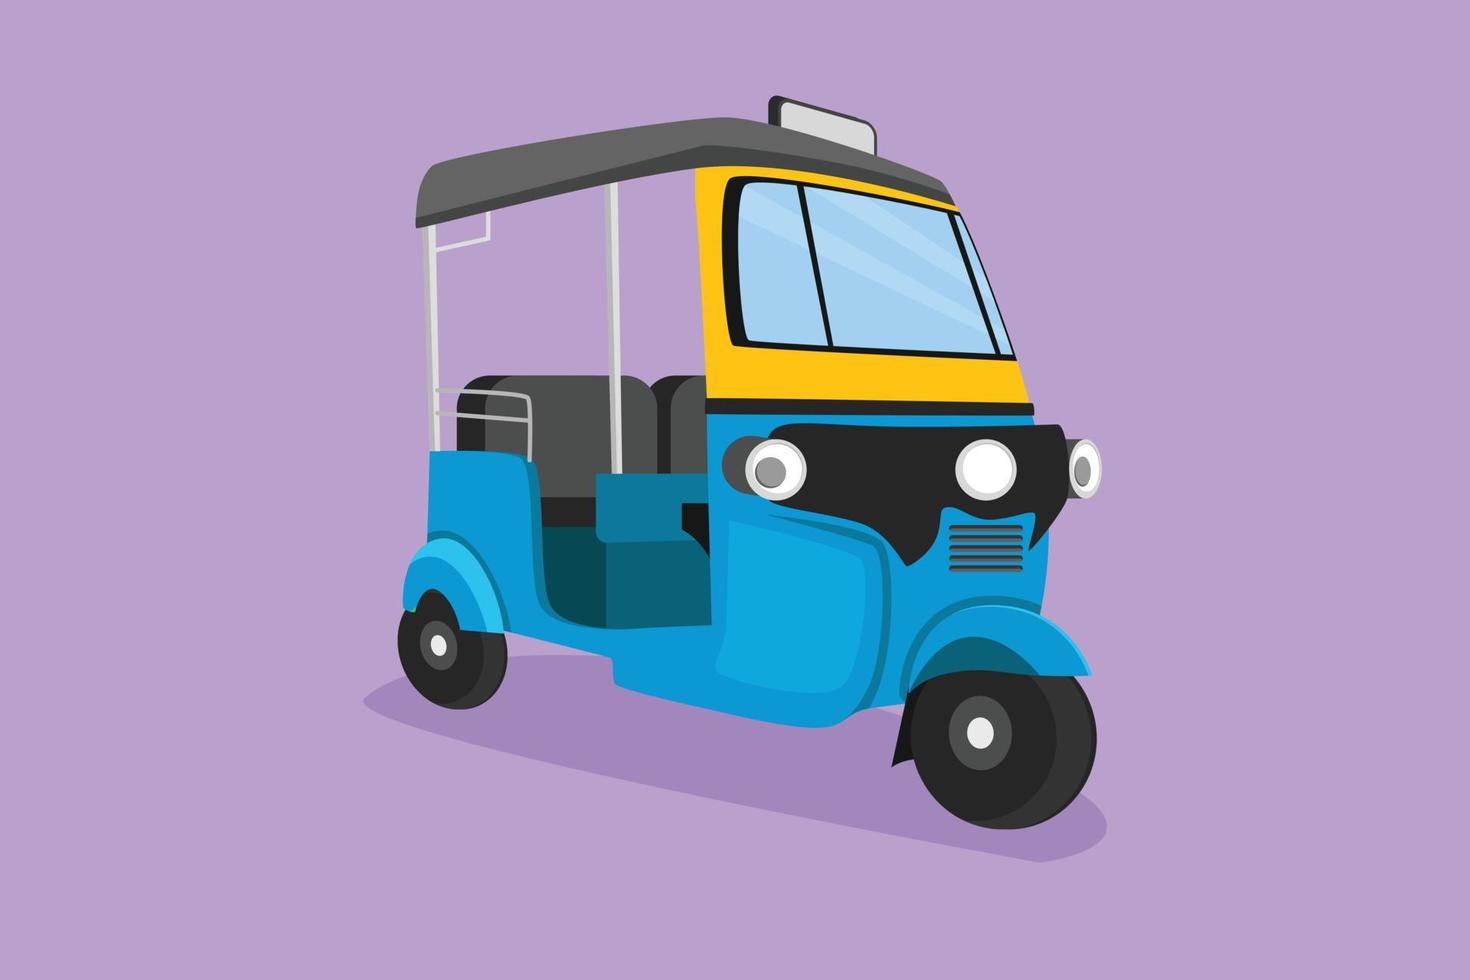 personaggio piatto disegno tuk tuk Tailandia spesso Usato di turisti come si intende di mezzi di trasporto per ottenere in giro turista attrazioni nel Tailandia. tradizionale veicolo su strada. cartone animato design vettore illustrazione